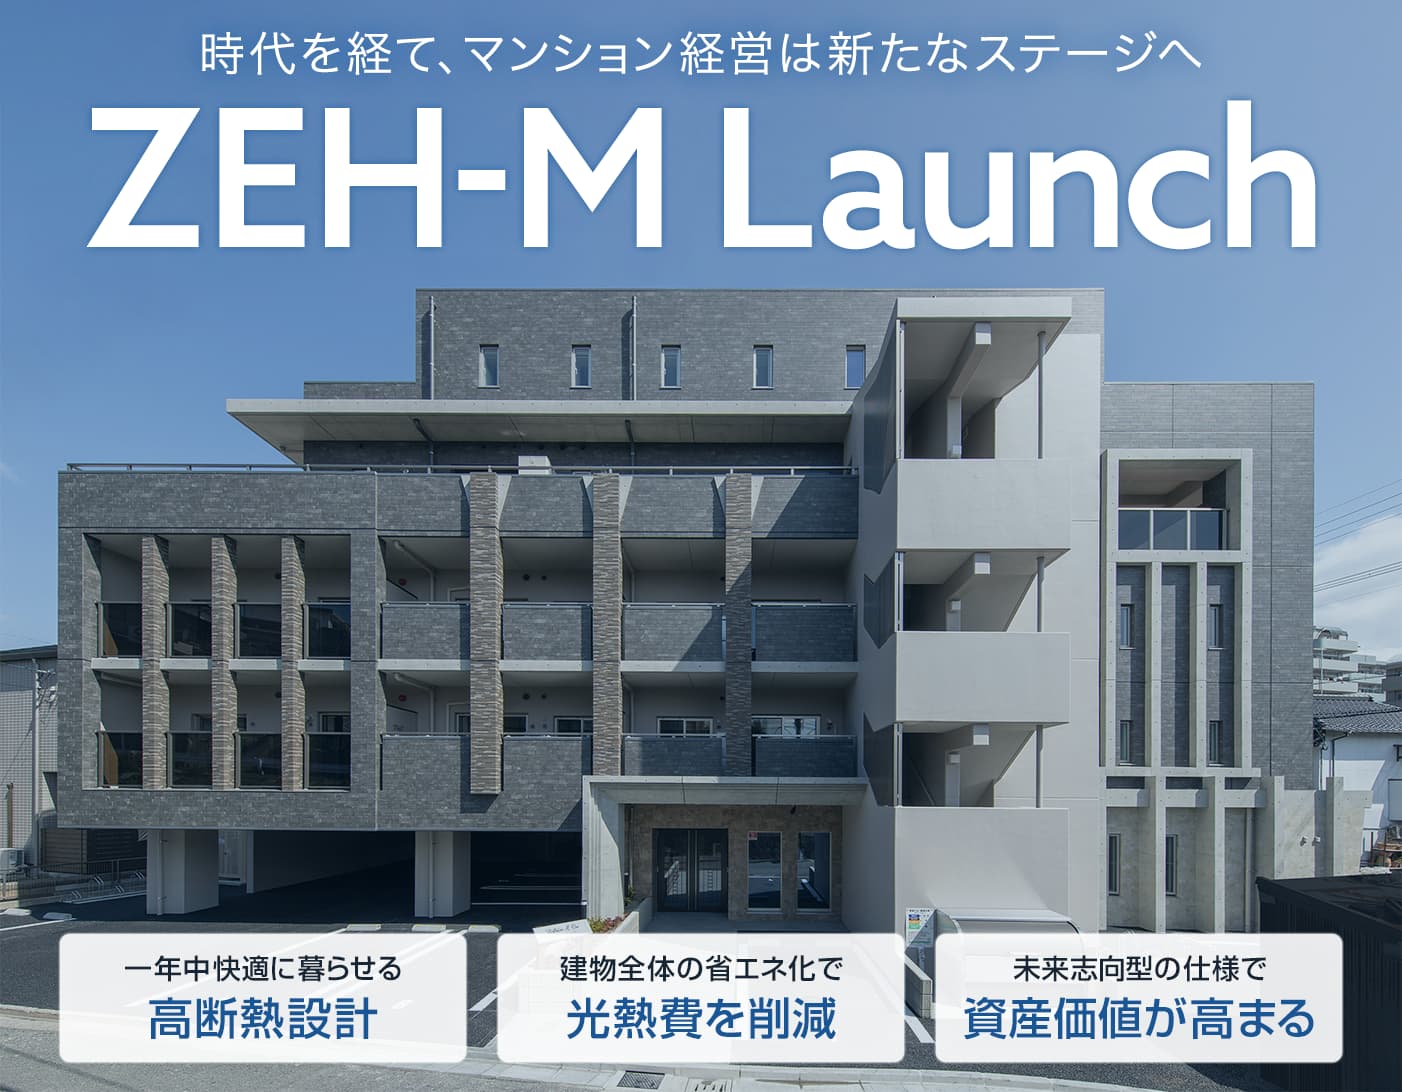  時代とともにマンション経営は新たなステージへ｜ZEH-M Launch